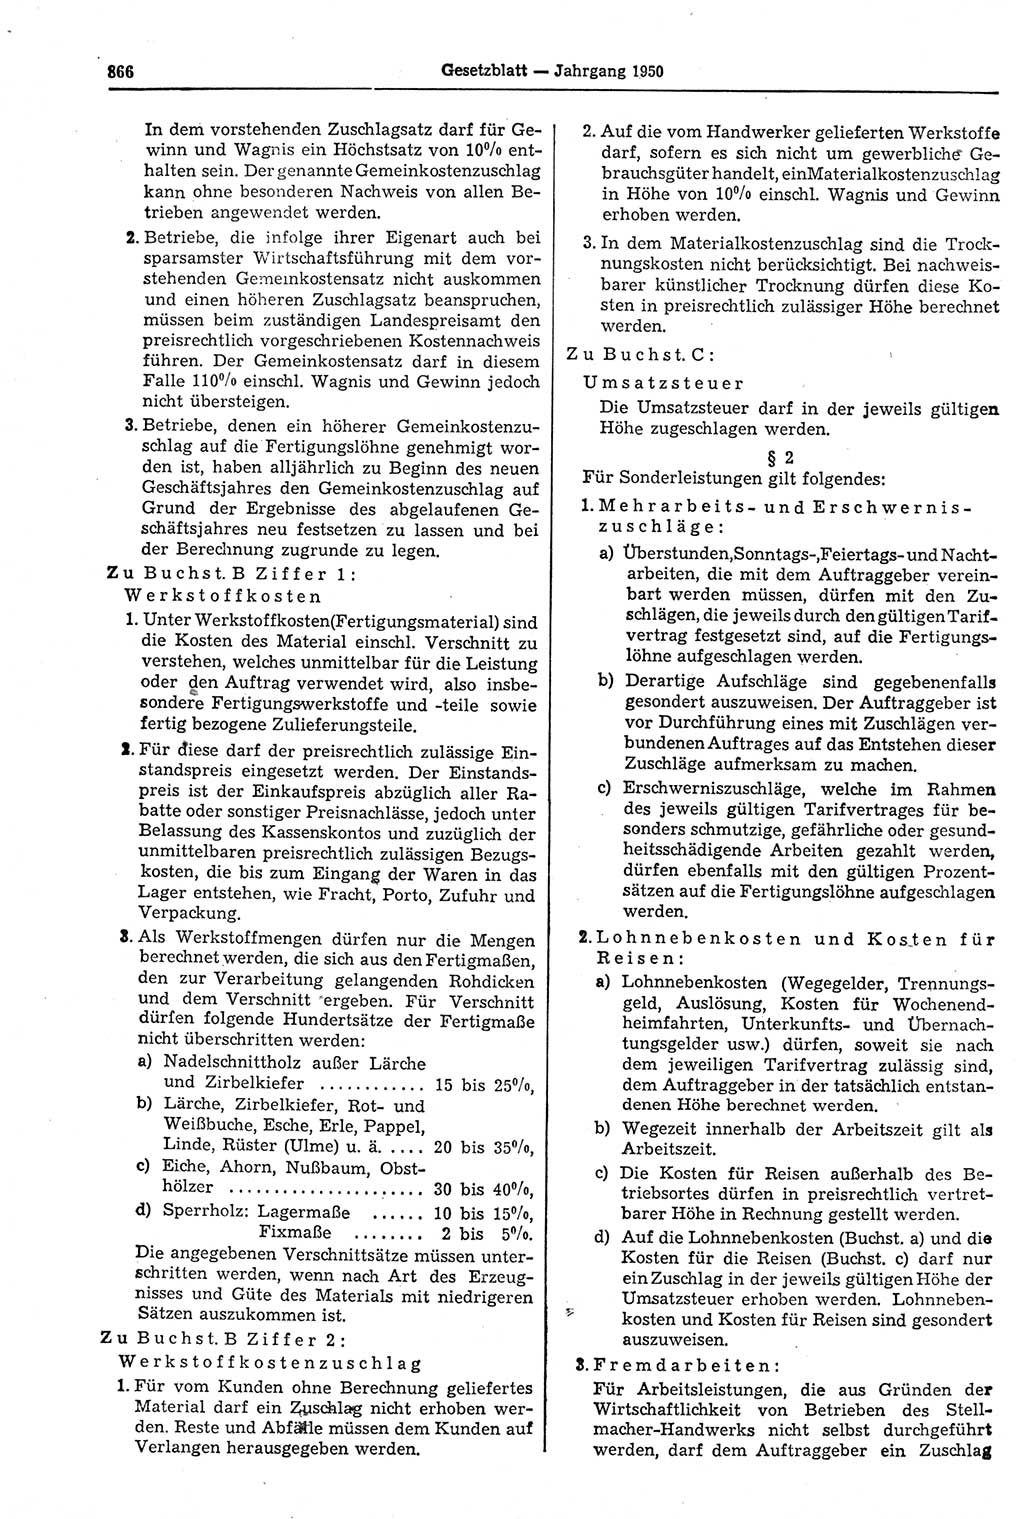 Gesetzblatt (GBl.) der Deutschen Demokratischen Republik (DDR) 1950, Seite 866 (GBl. DDR 1950, S. 866)